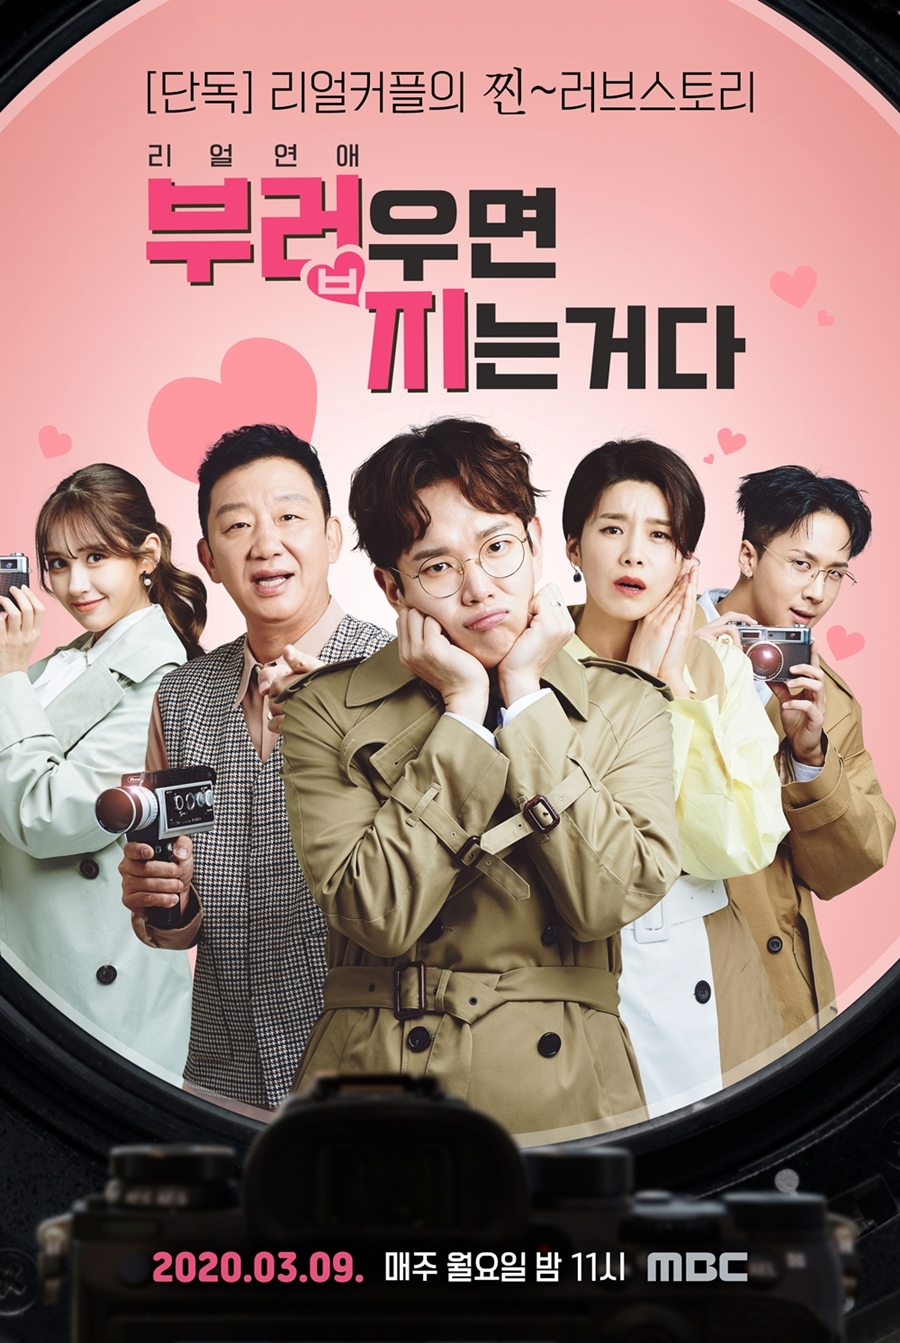 '부러우면 지는거다' 리액션 포스터 공개 / 사진: MBC 제공